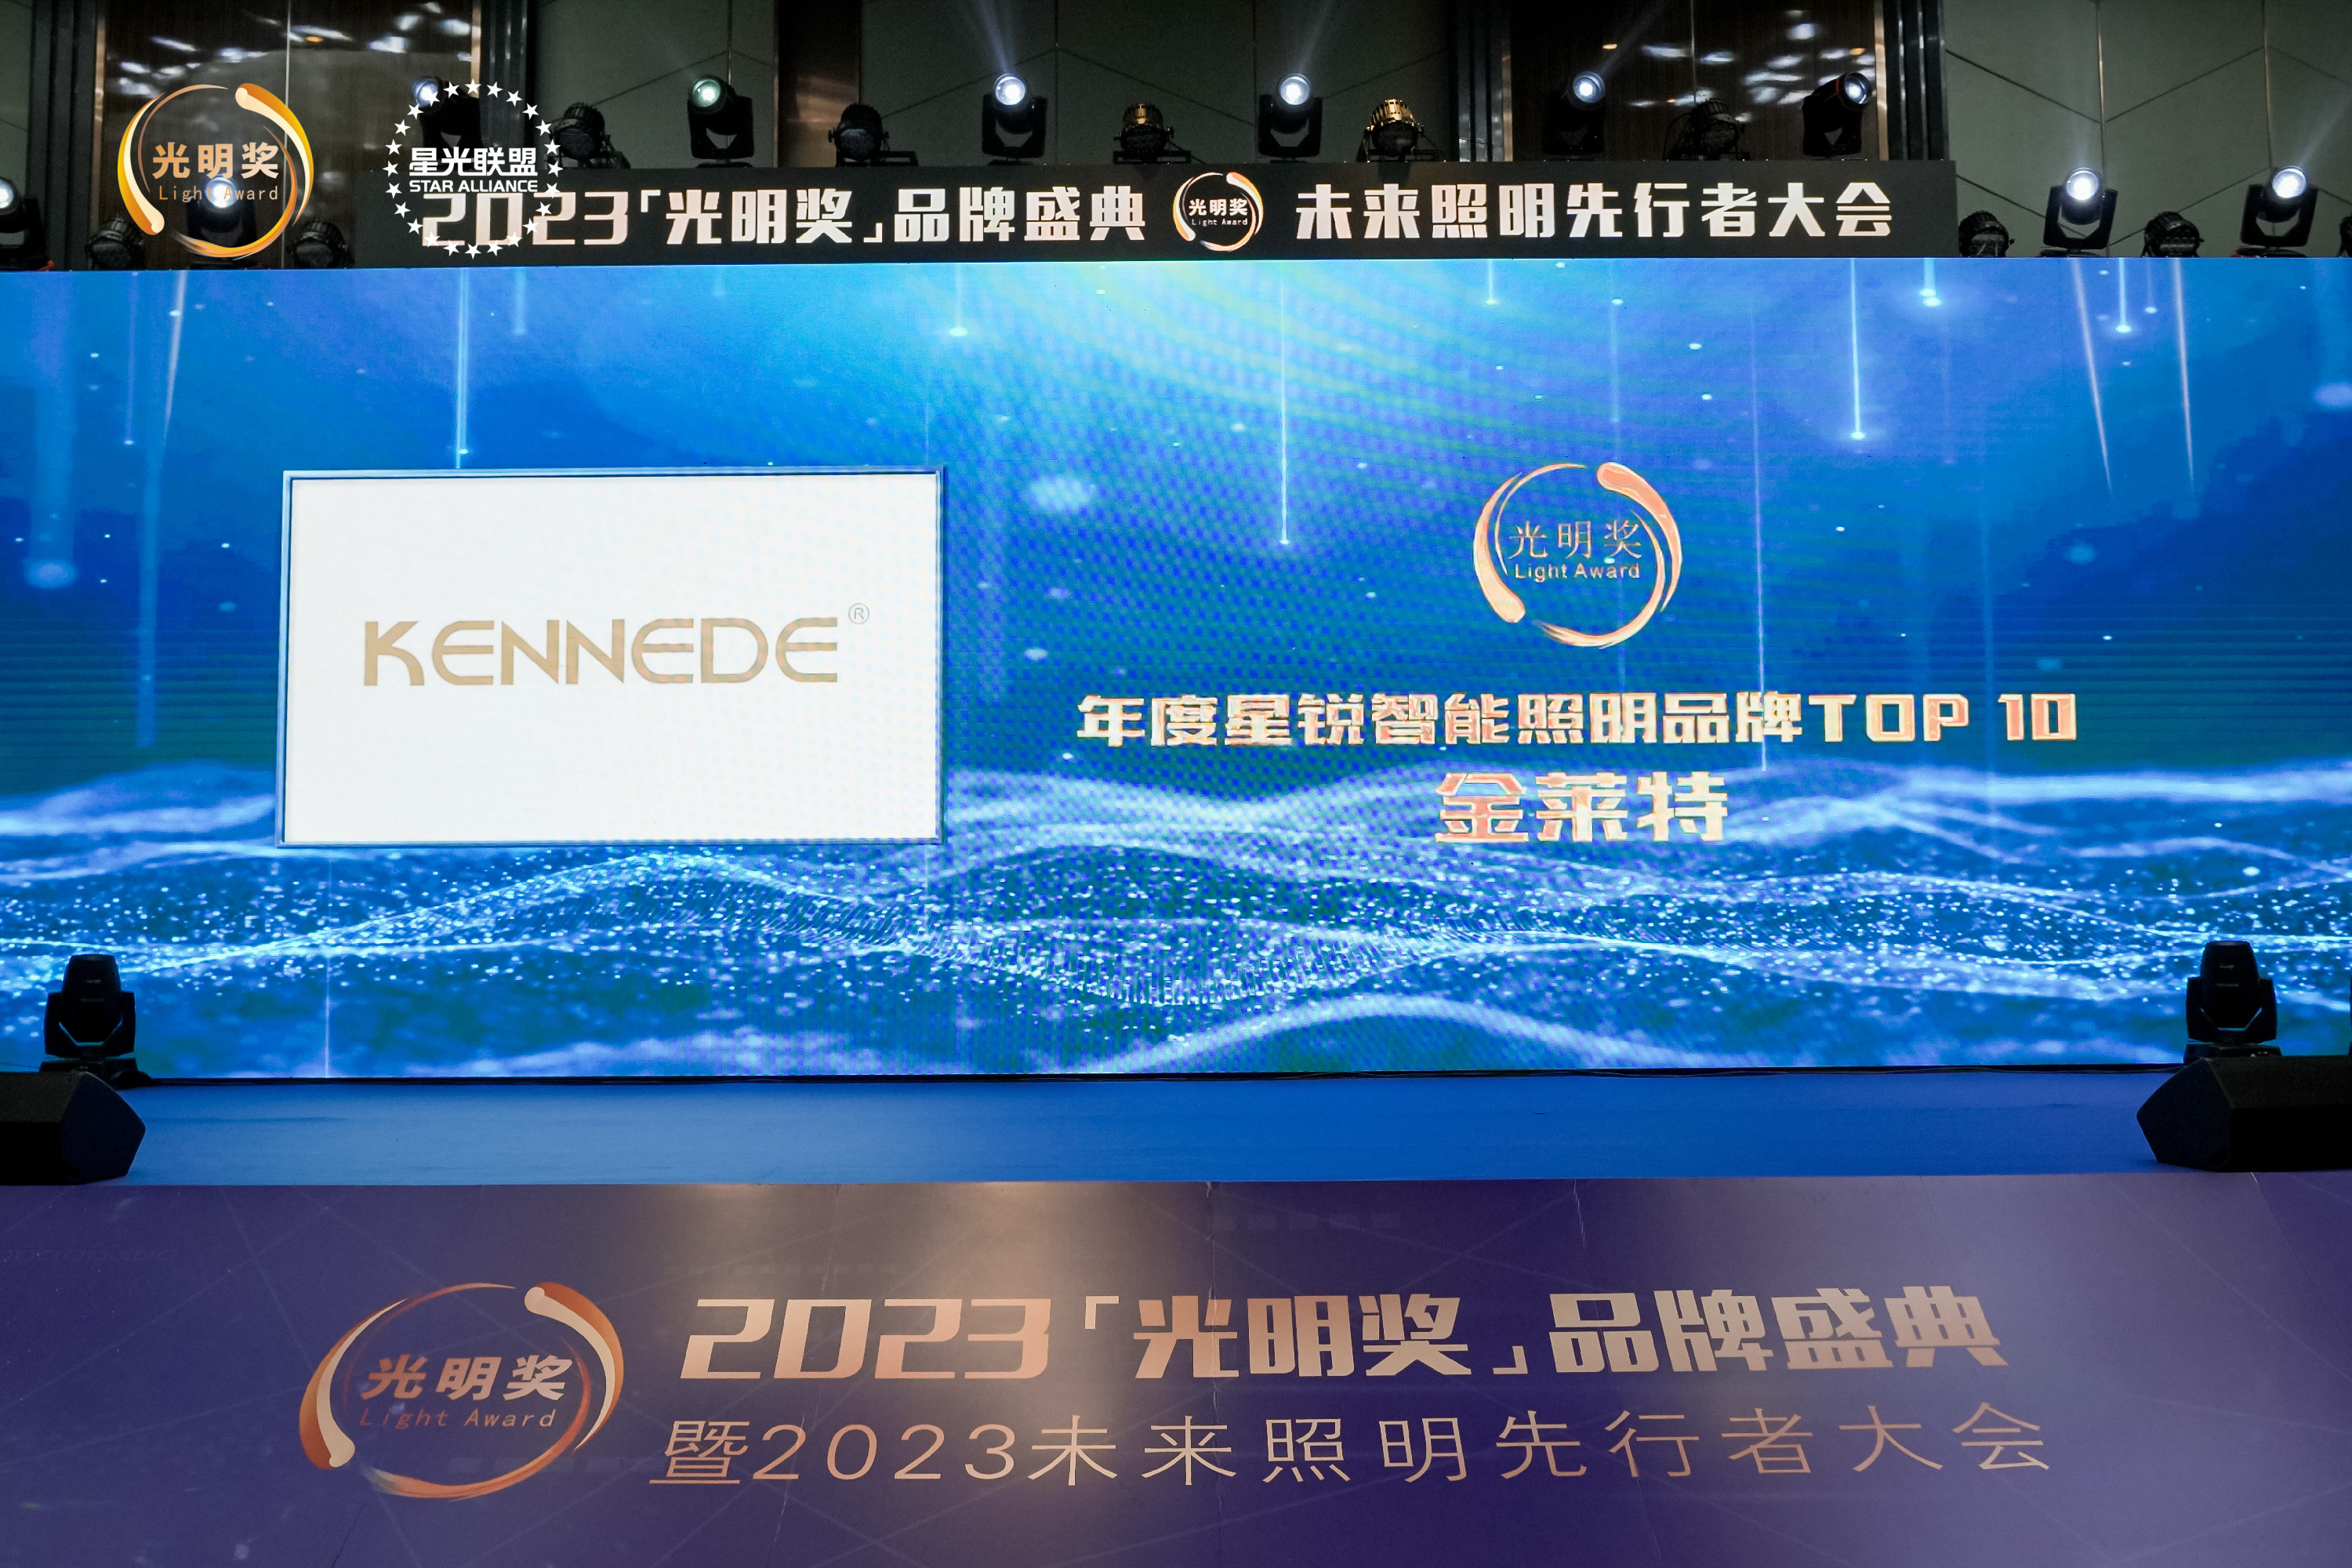 KENNEDE gana el premio "Star Smart Lighting Brand" en la ceremonia del "Bright Award" de 2023